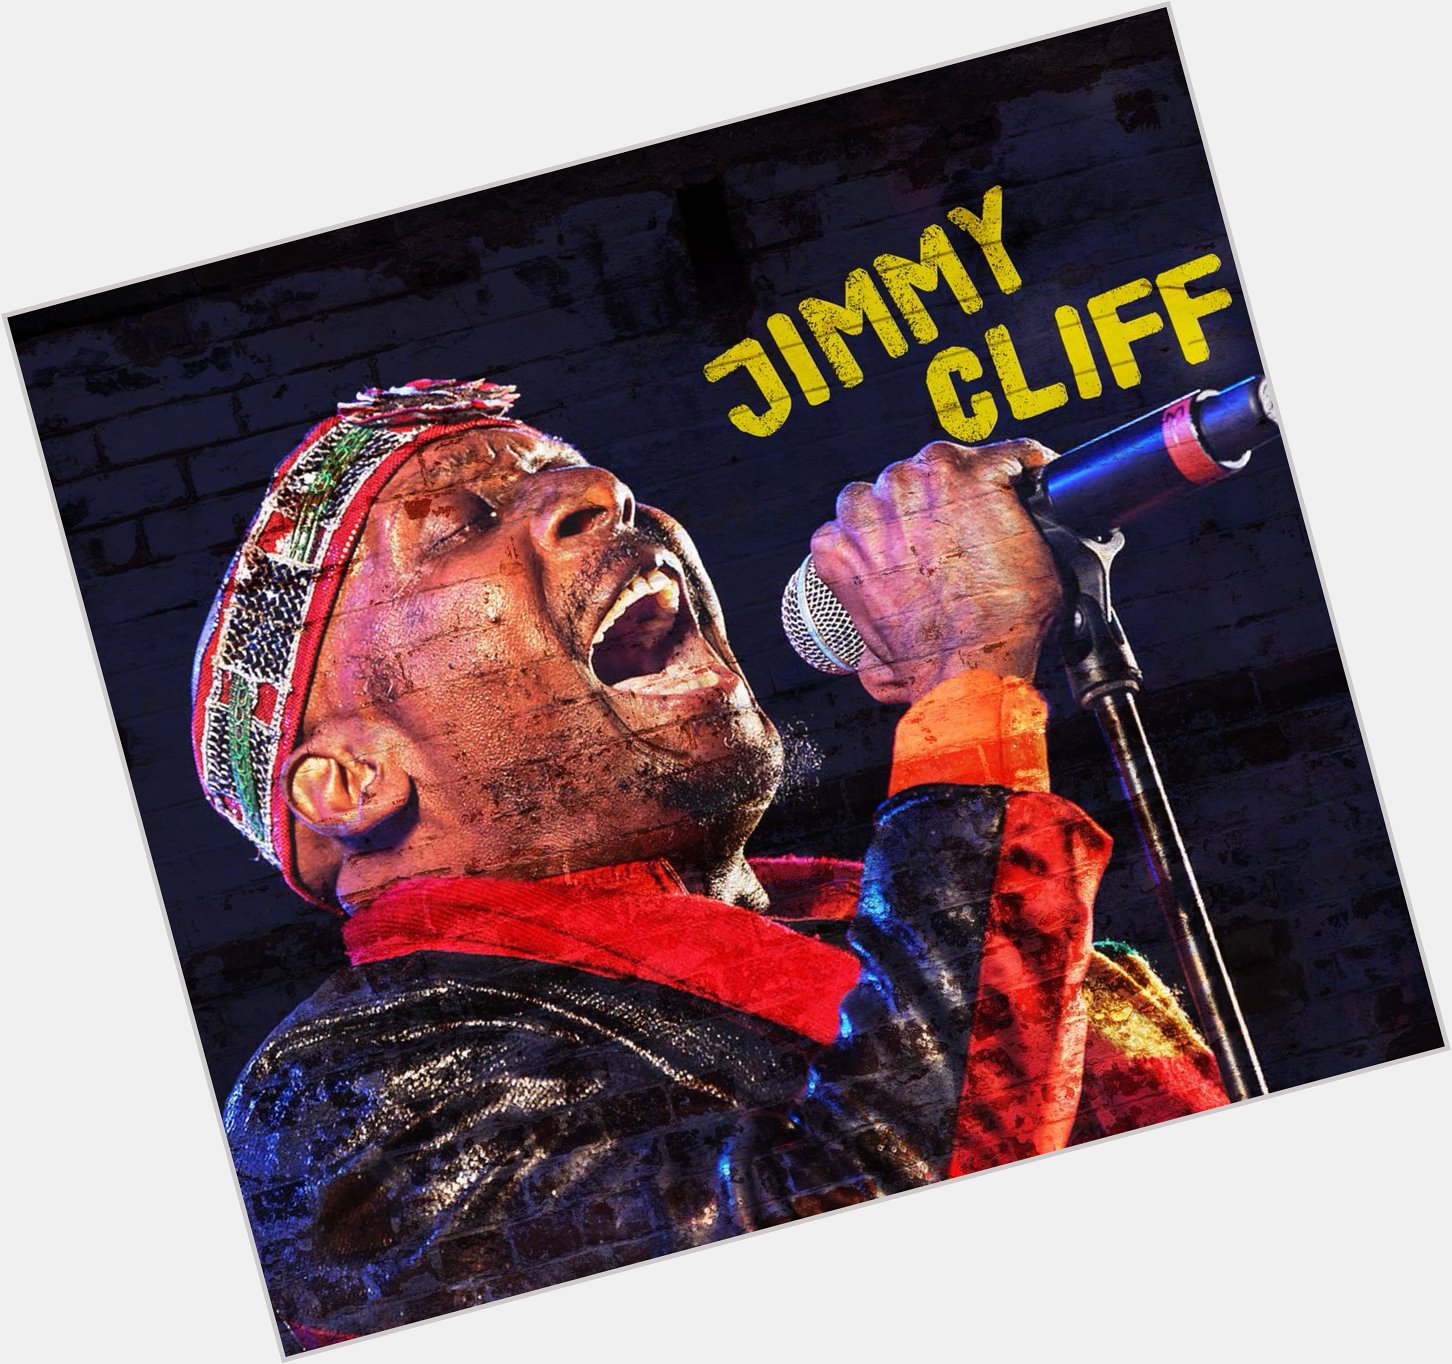 Happy birthday to ska and reggae legend Jimmy Cliff!  